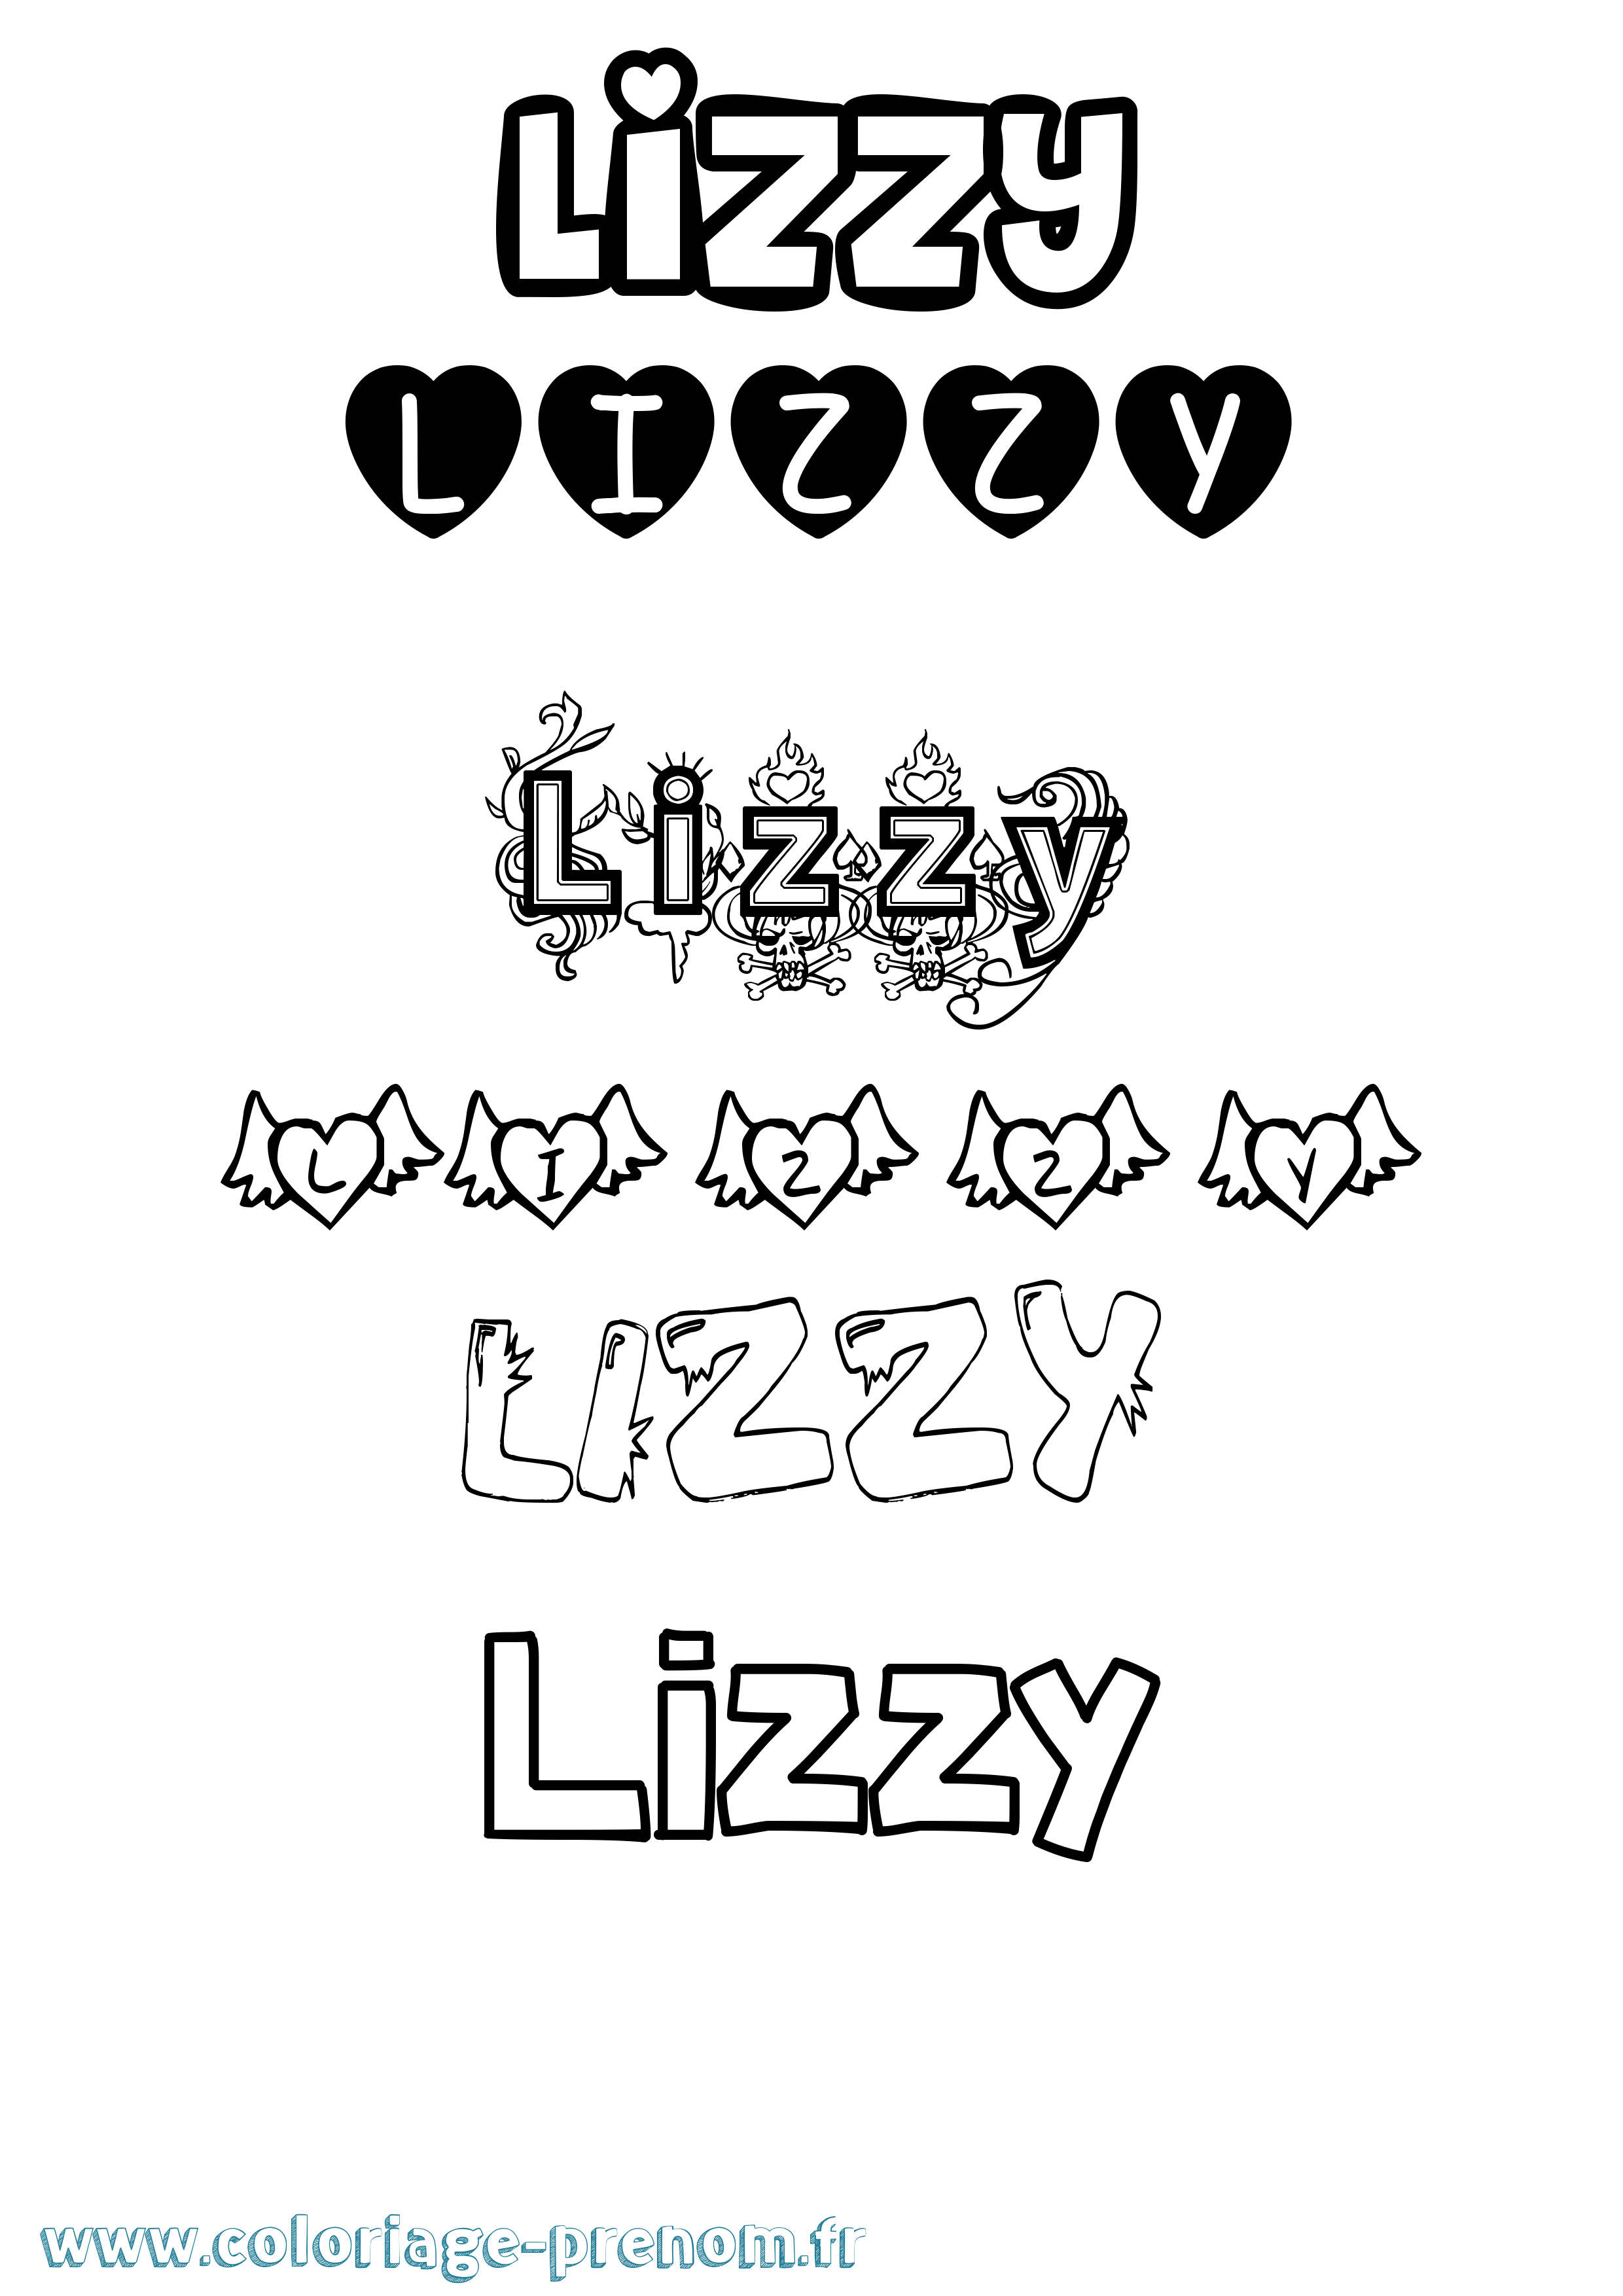 Coloriage prénom Lizzy Girly